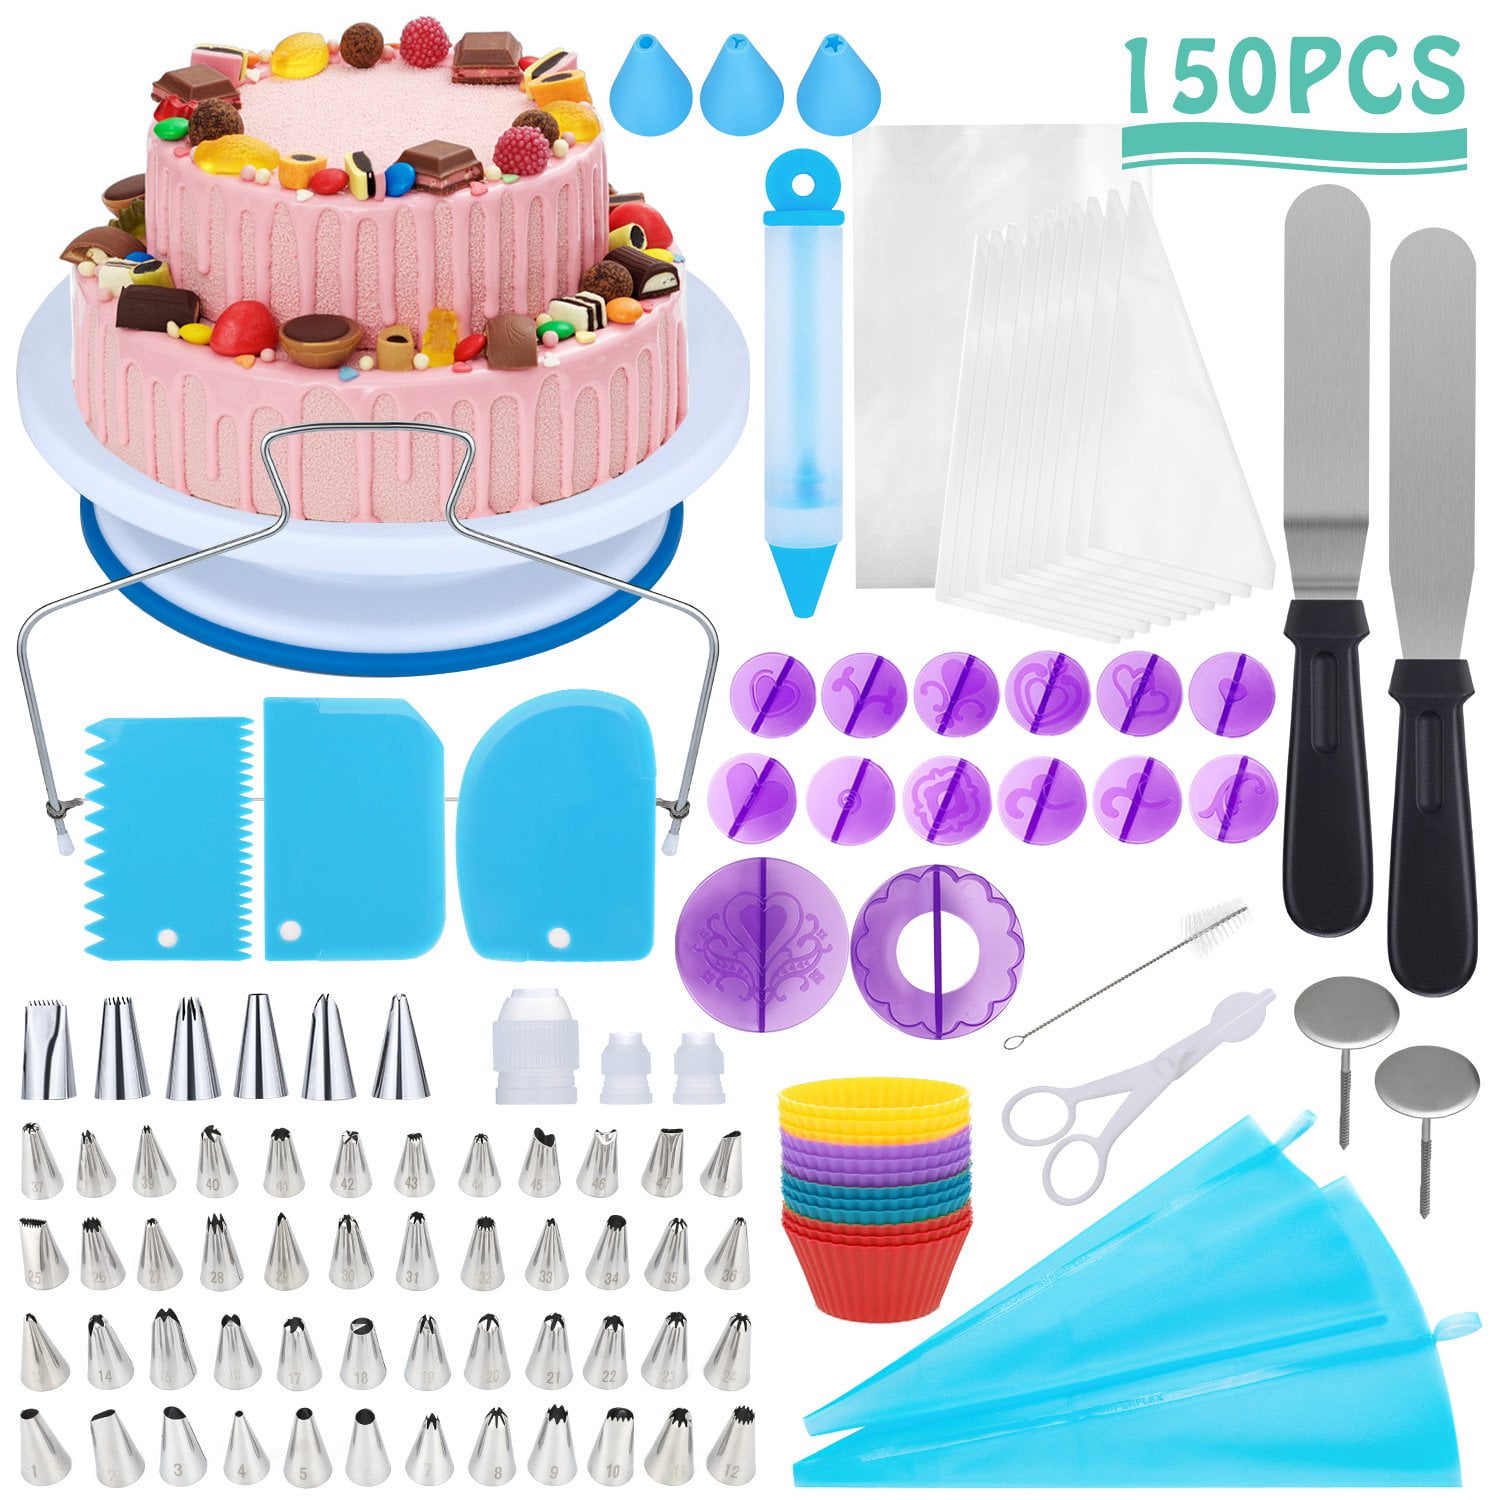 Cake decorating kit – best buys 2020